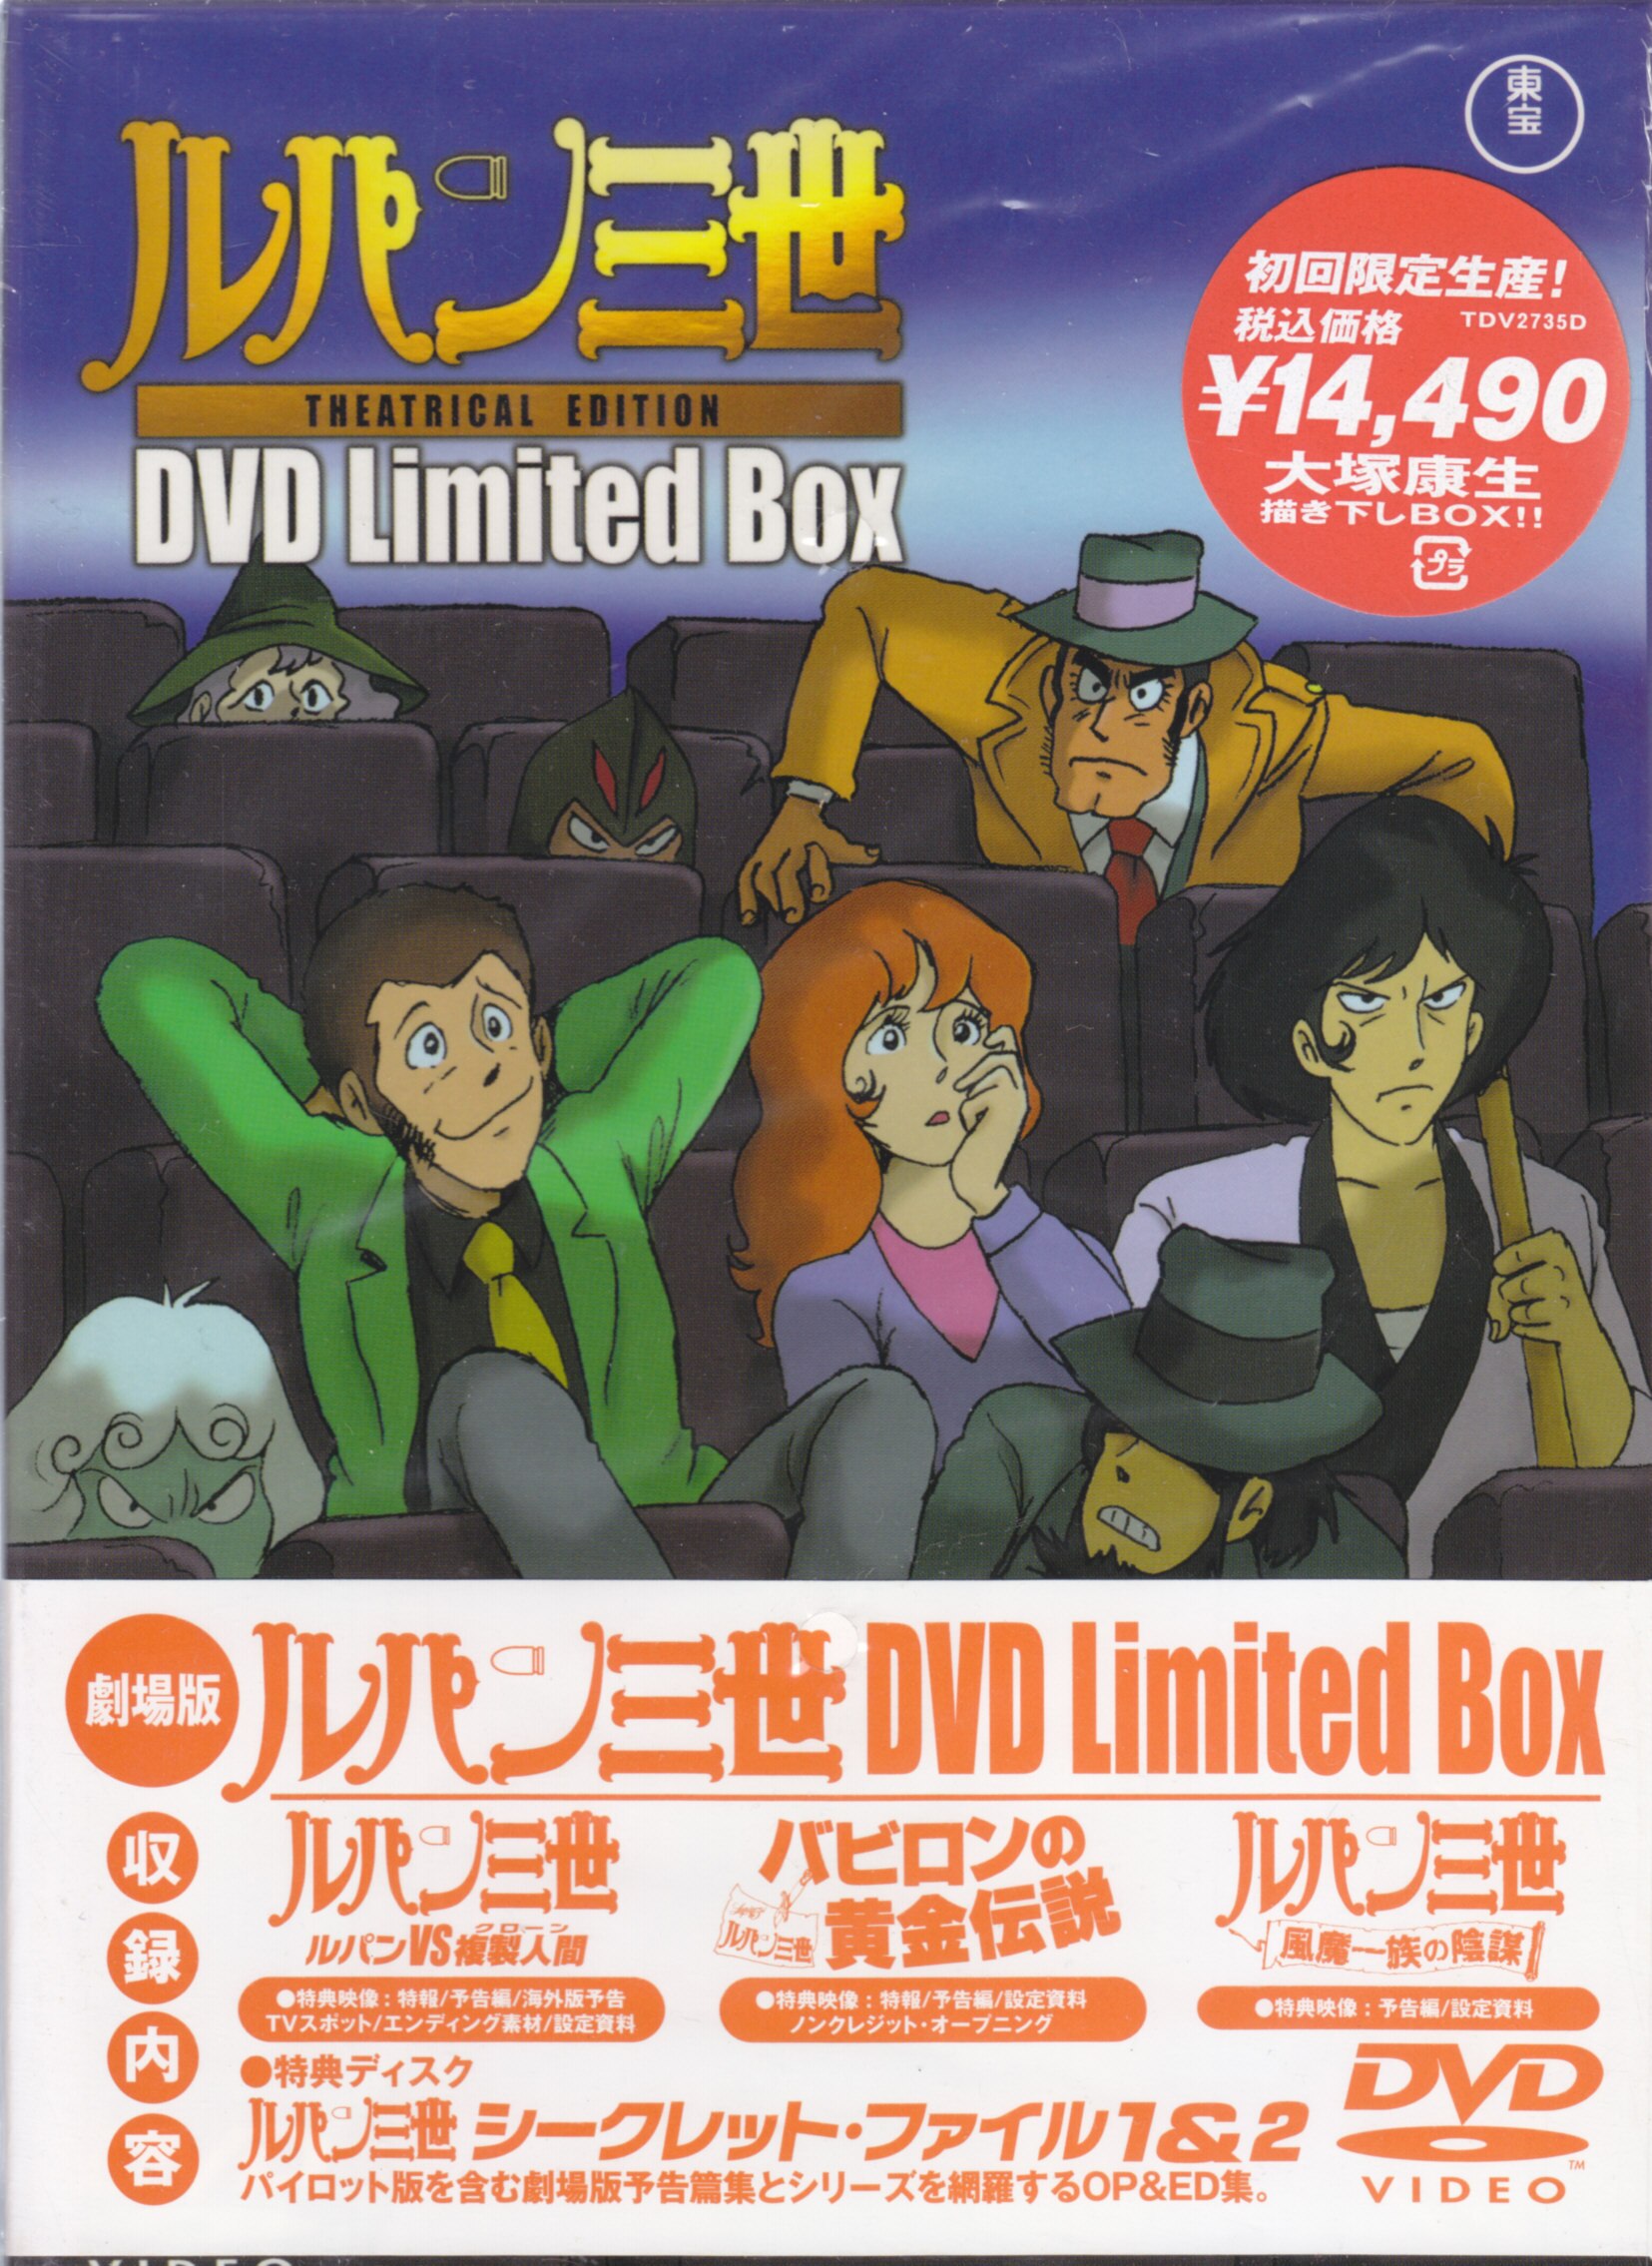 ○ルパンVS複製人間【DVD】ルパン三世 DVD Limited Box - アニメ